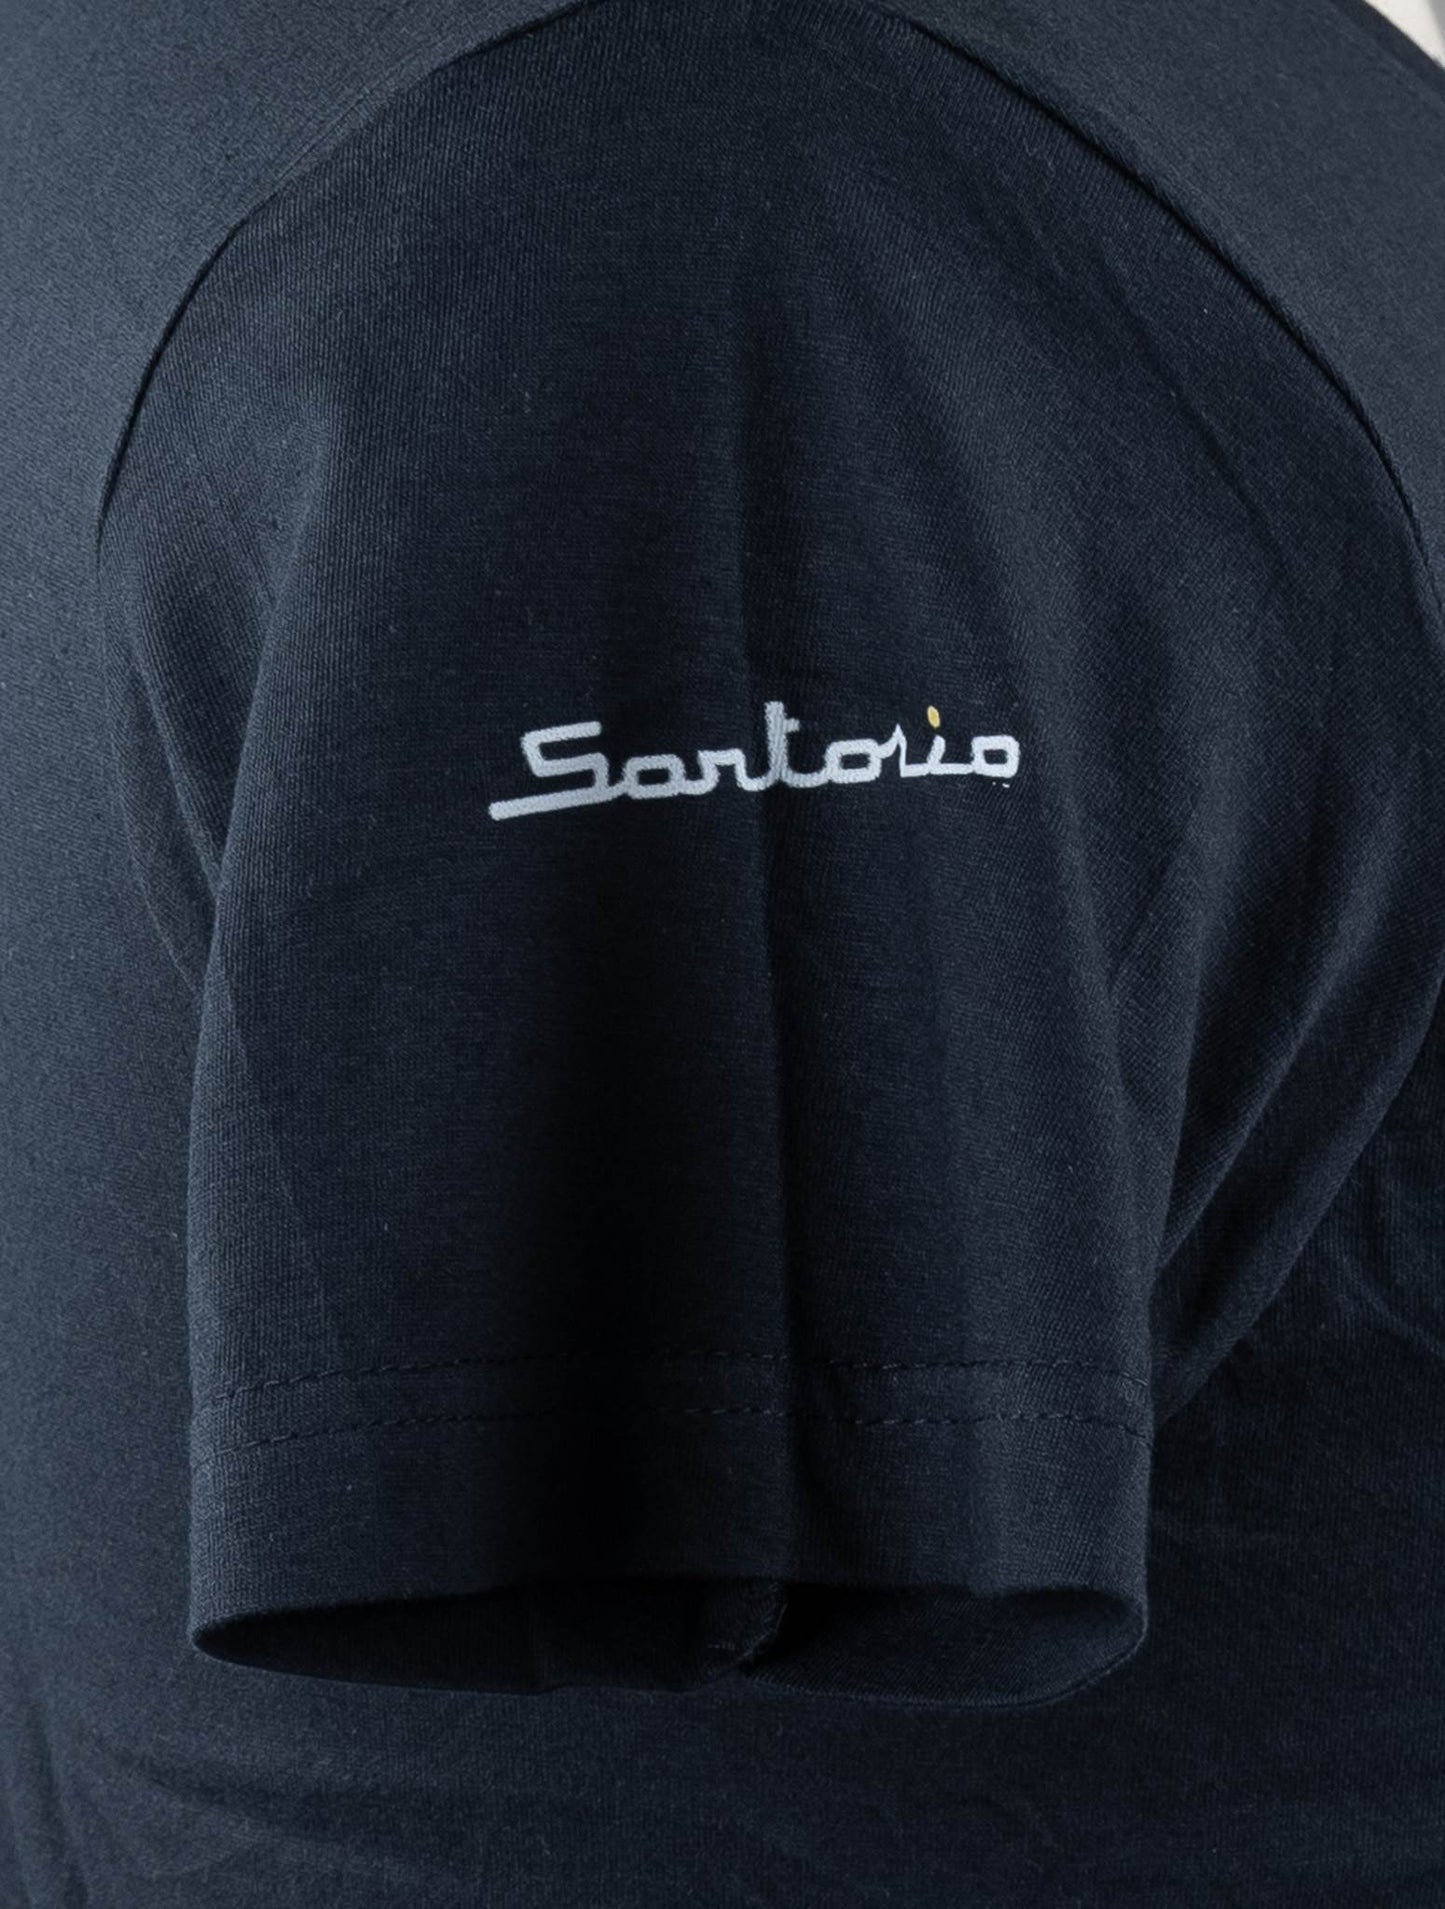 Сарторио Наполи синий темно-синий хлопок футболка Специальный выпуск